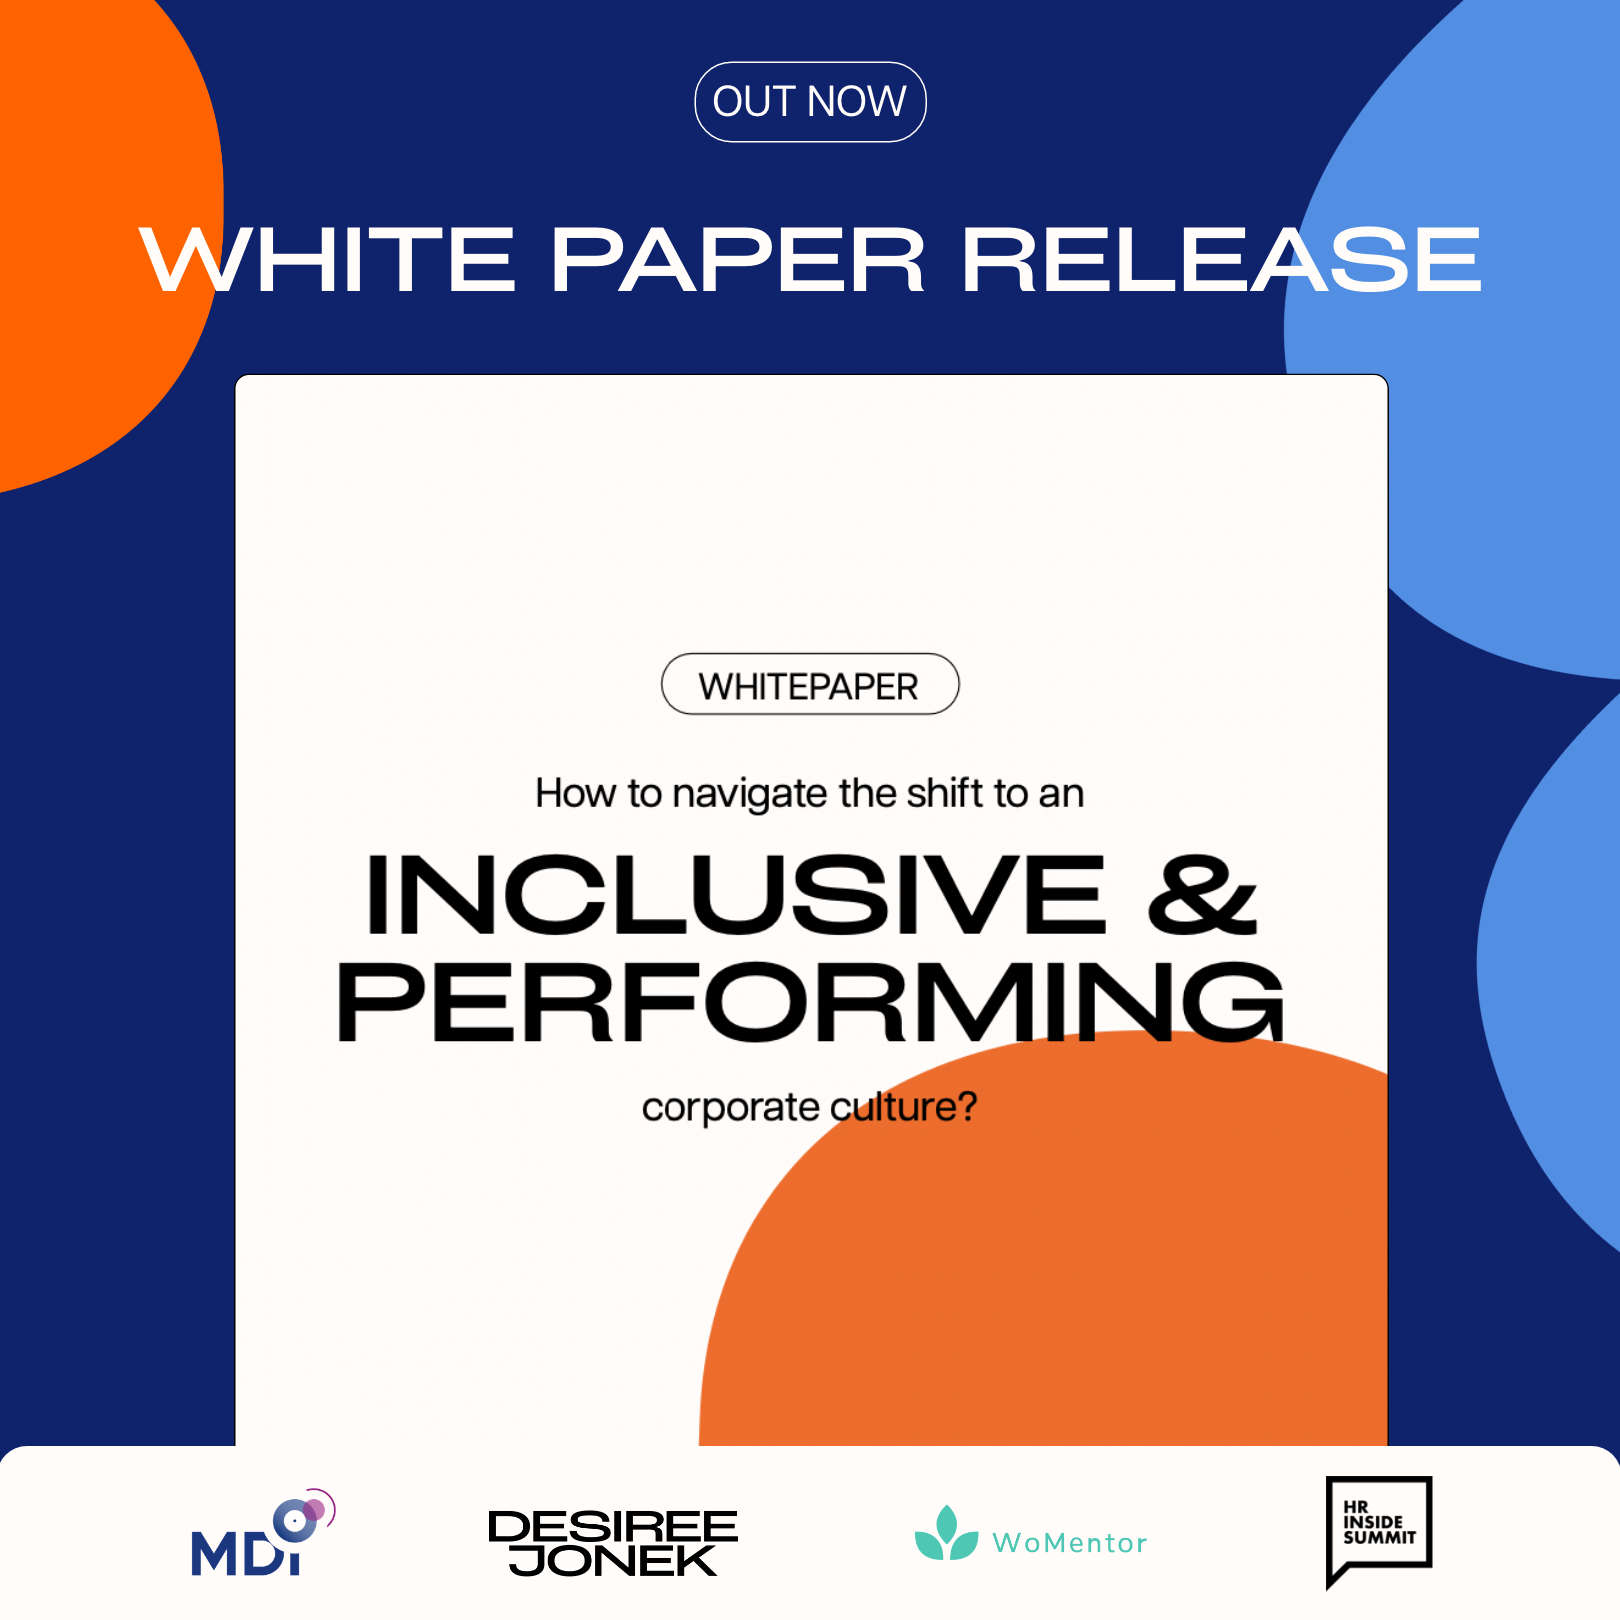 White Paper Release